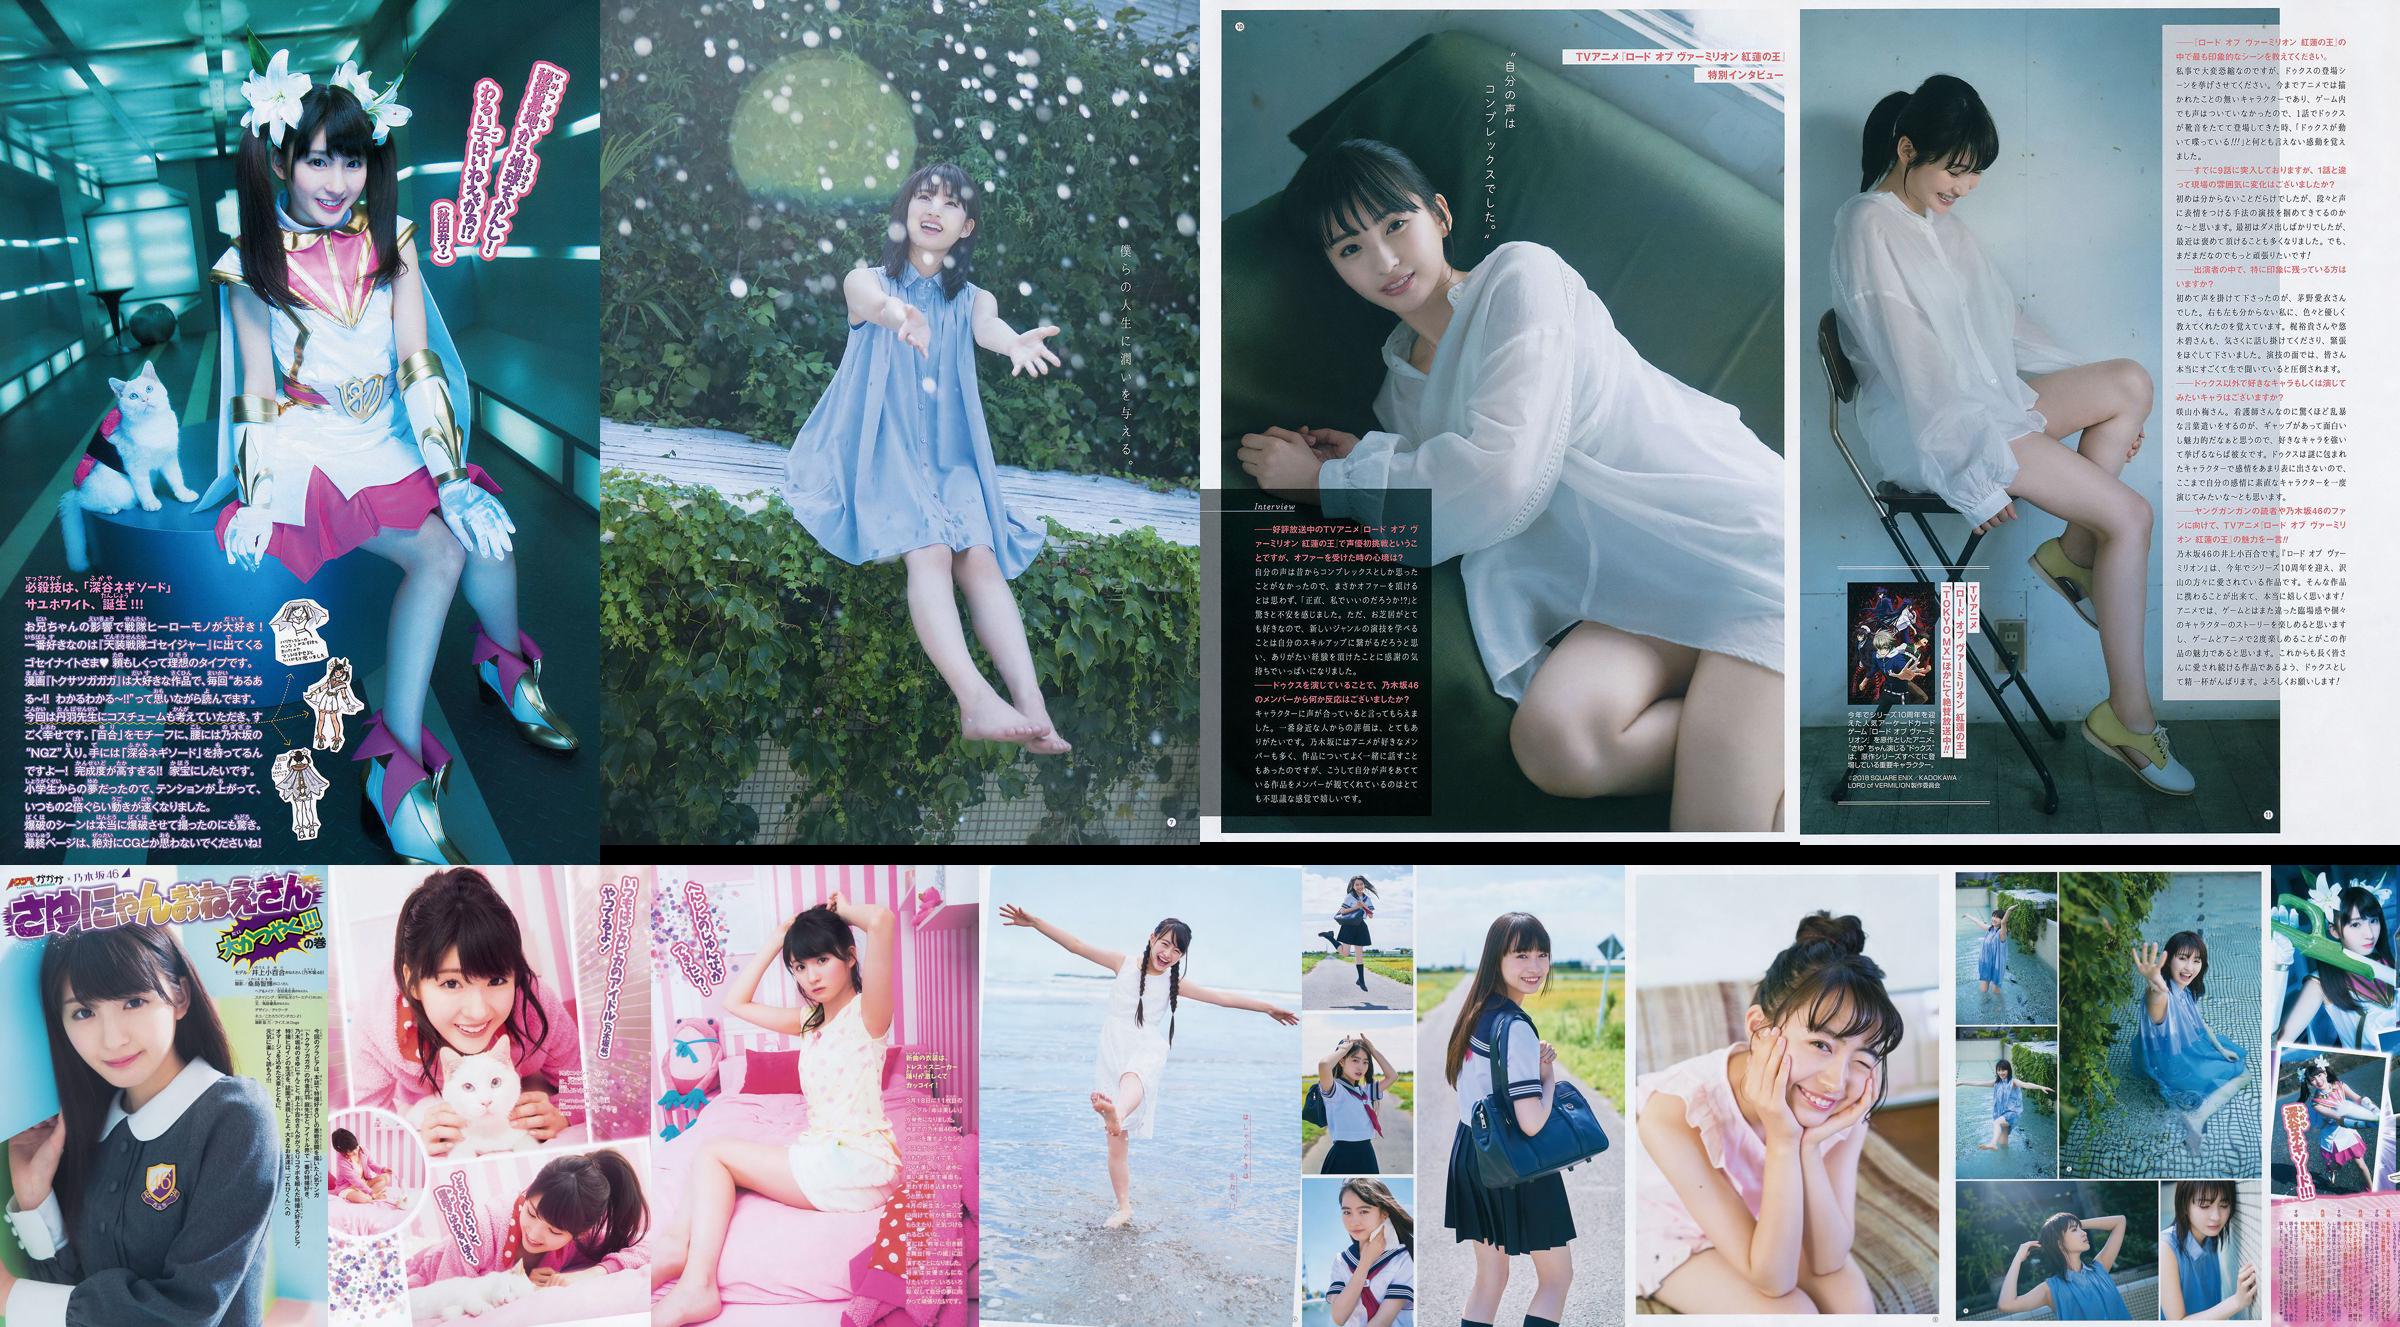 [Young Gangan] Sayuri Inoue Its original sand 2018 No.18 Photo Magazine No.74c422 Page 4